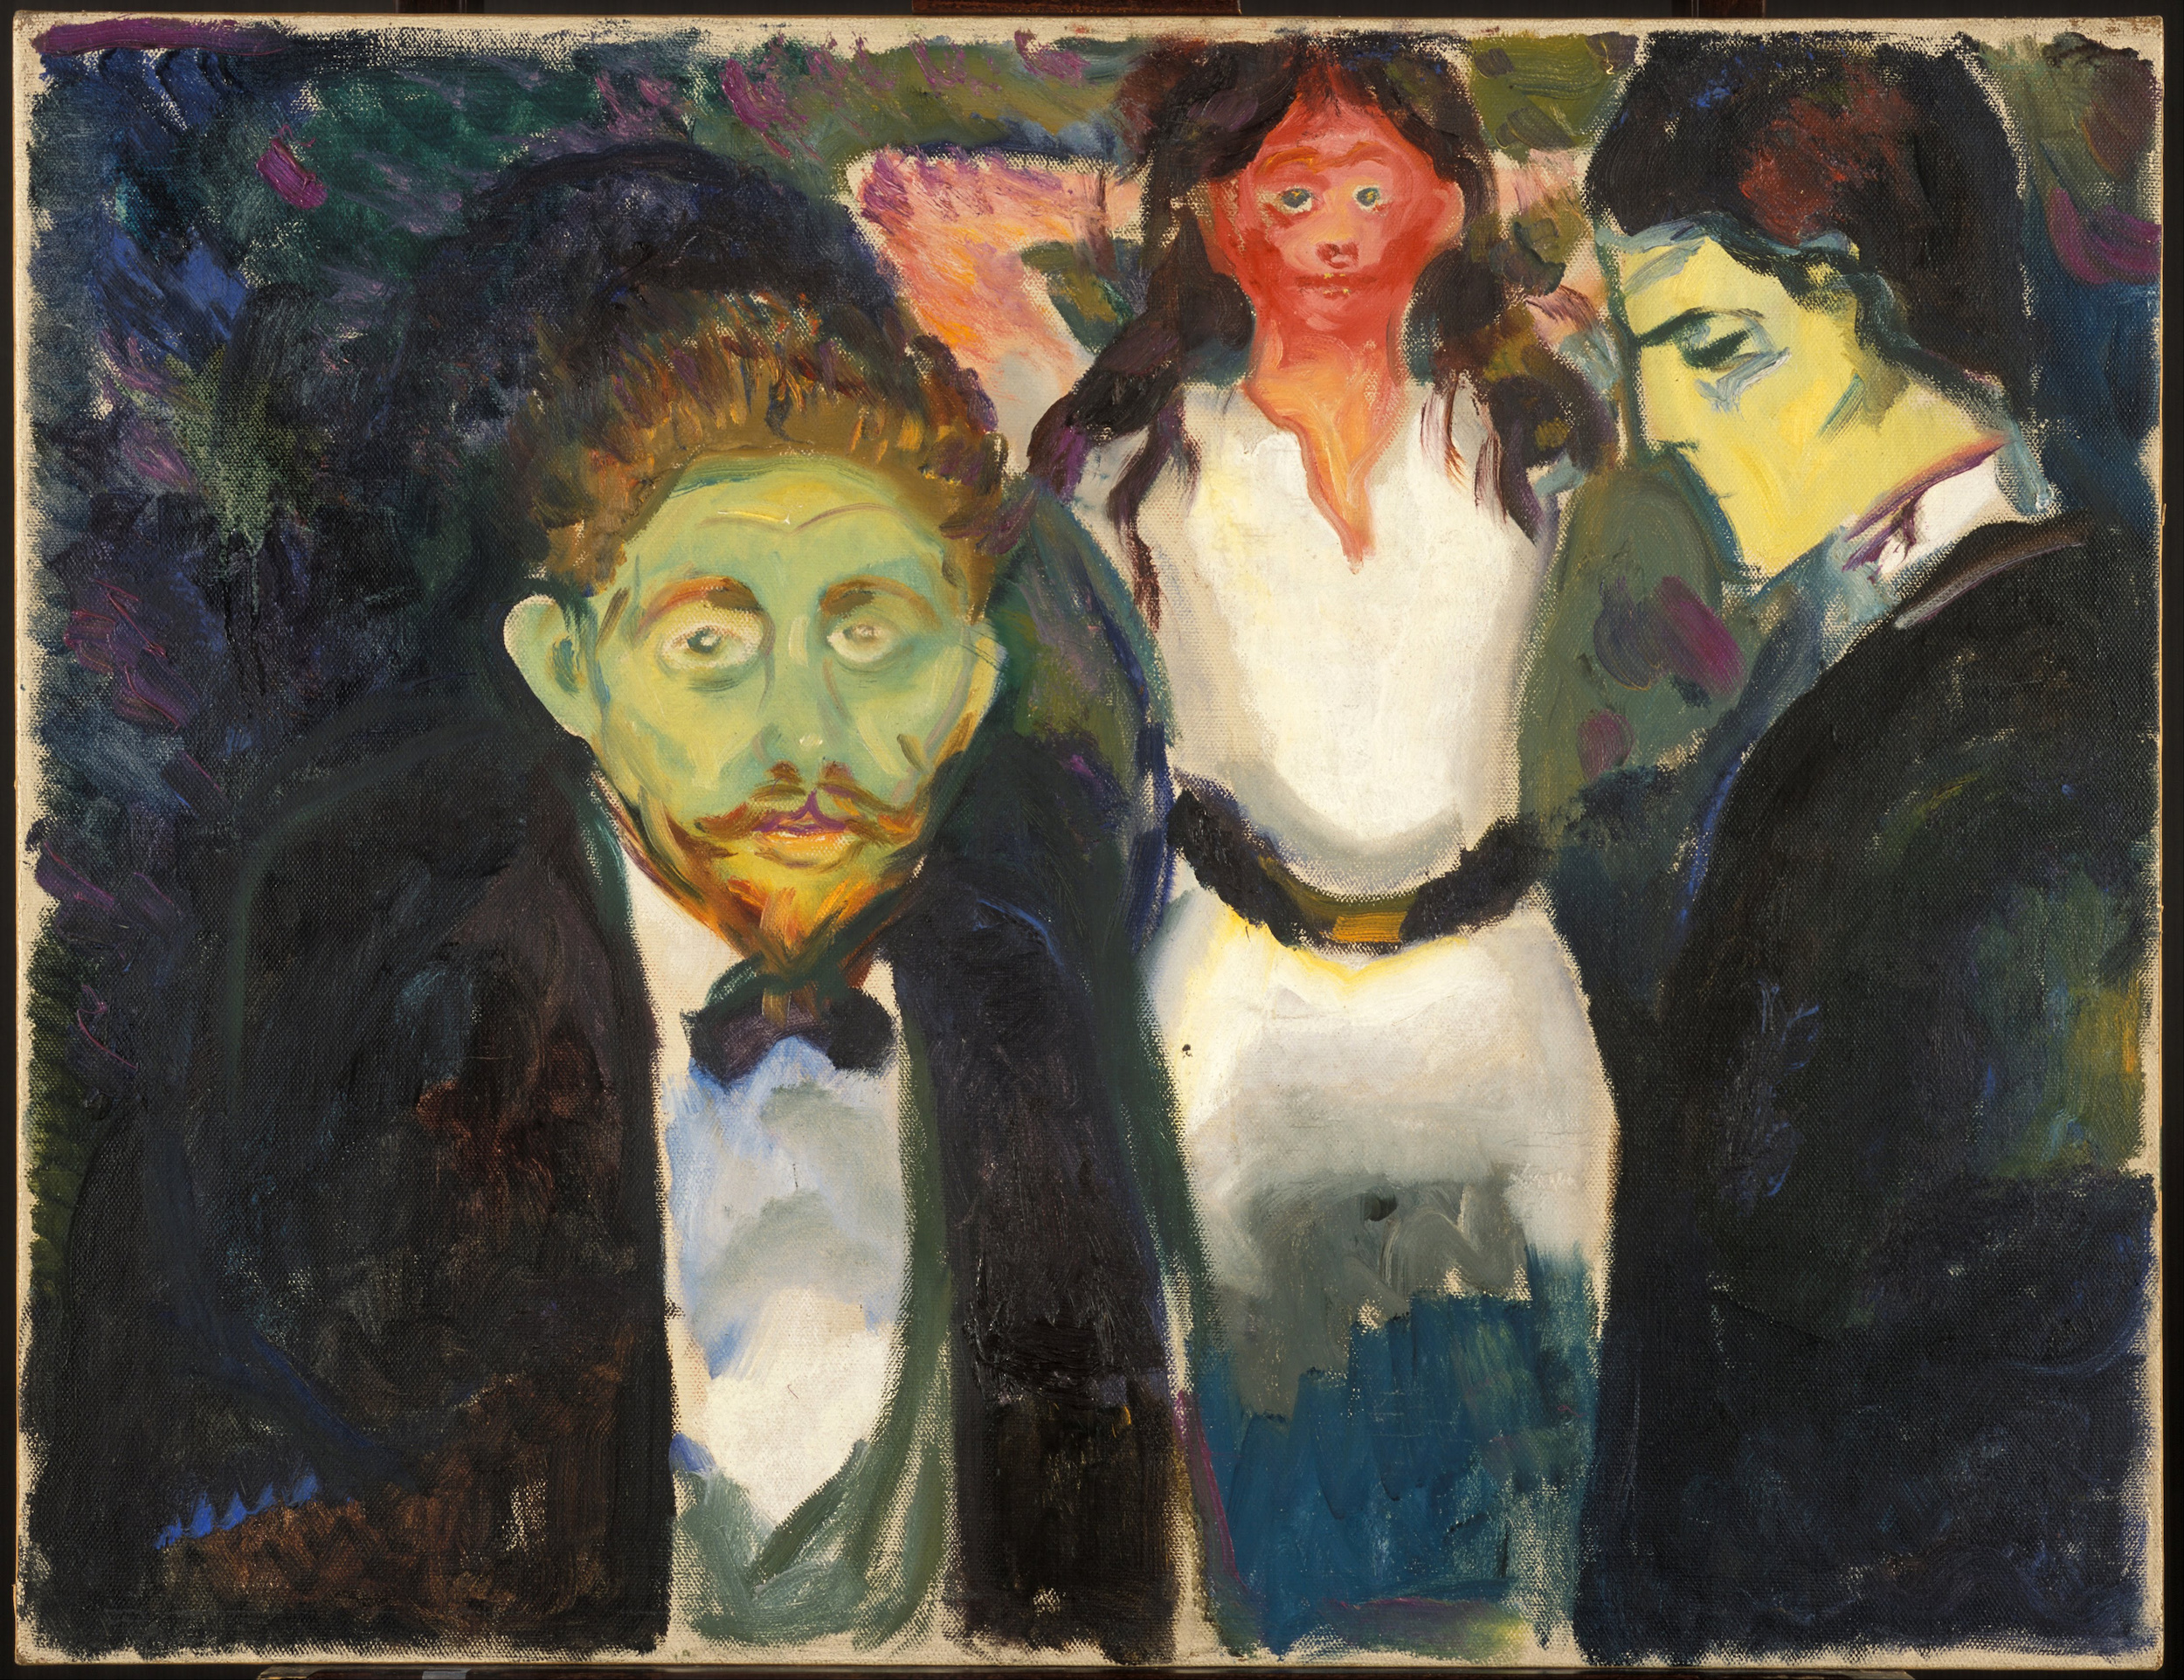 Jalousie by Edvard Munch - 1907 - 98 x 75 cm Le Musée Munch